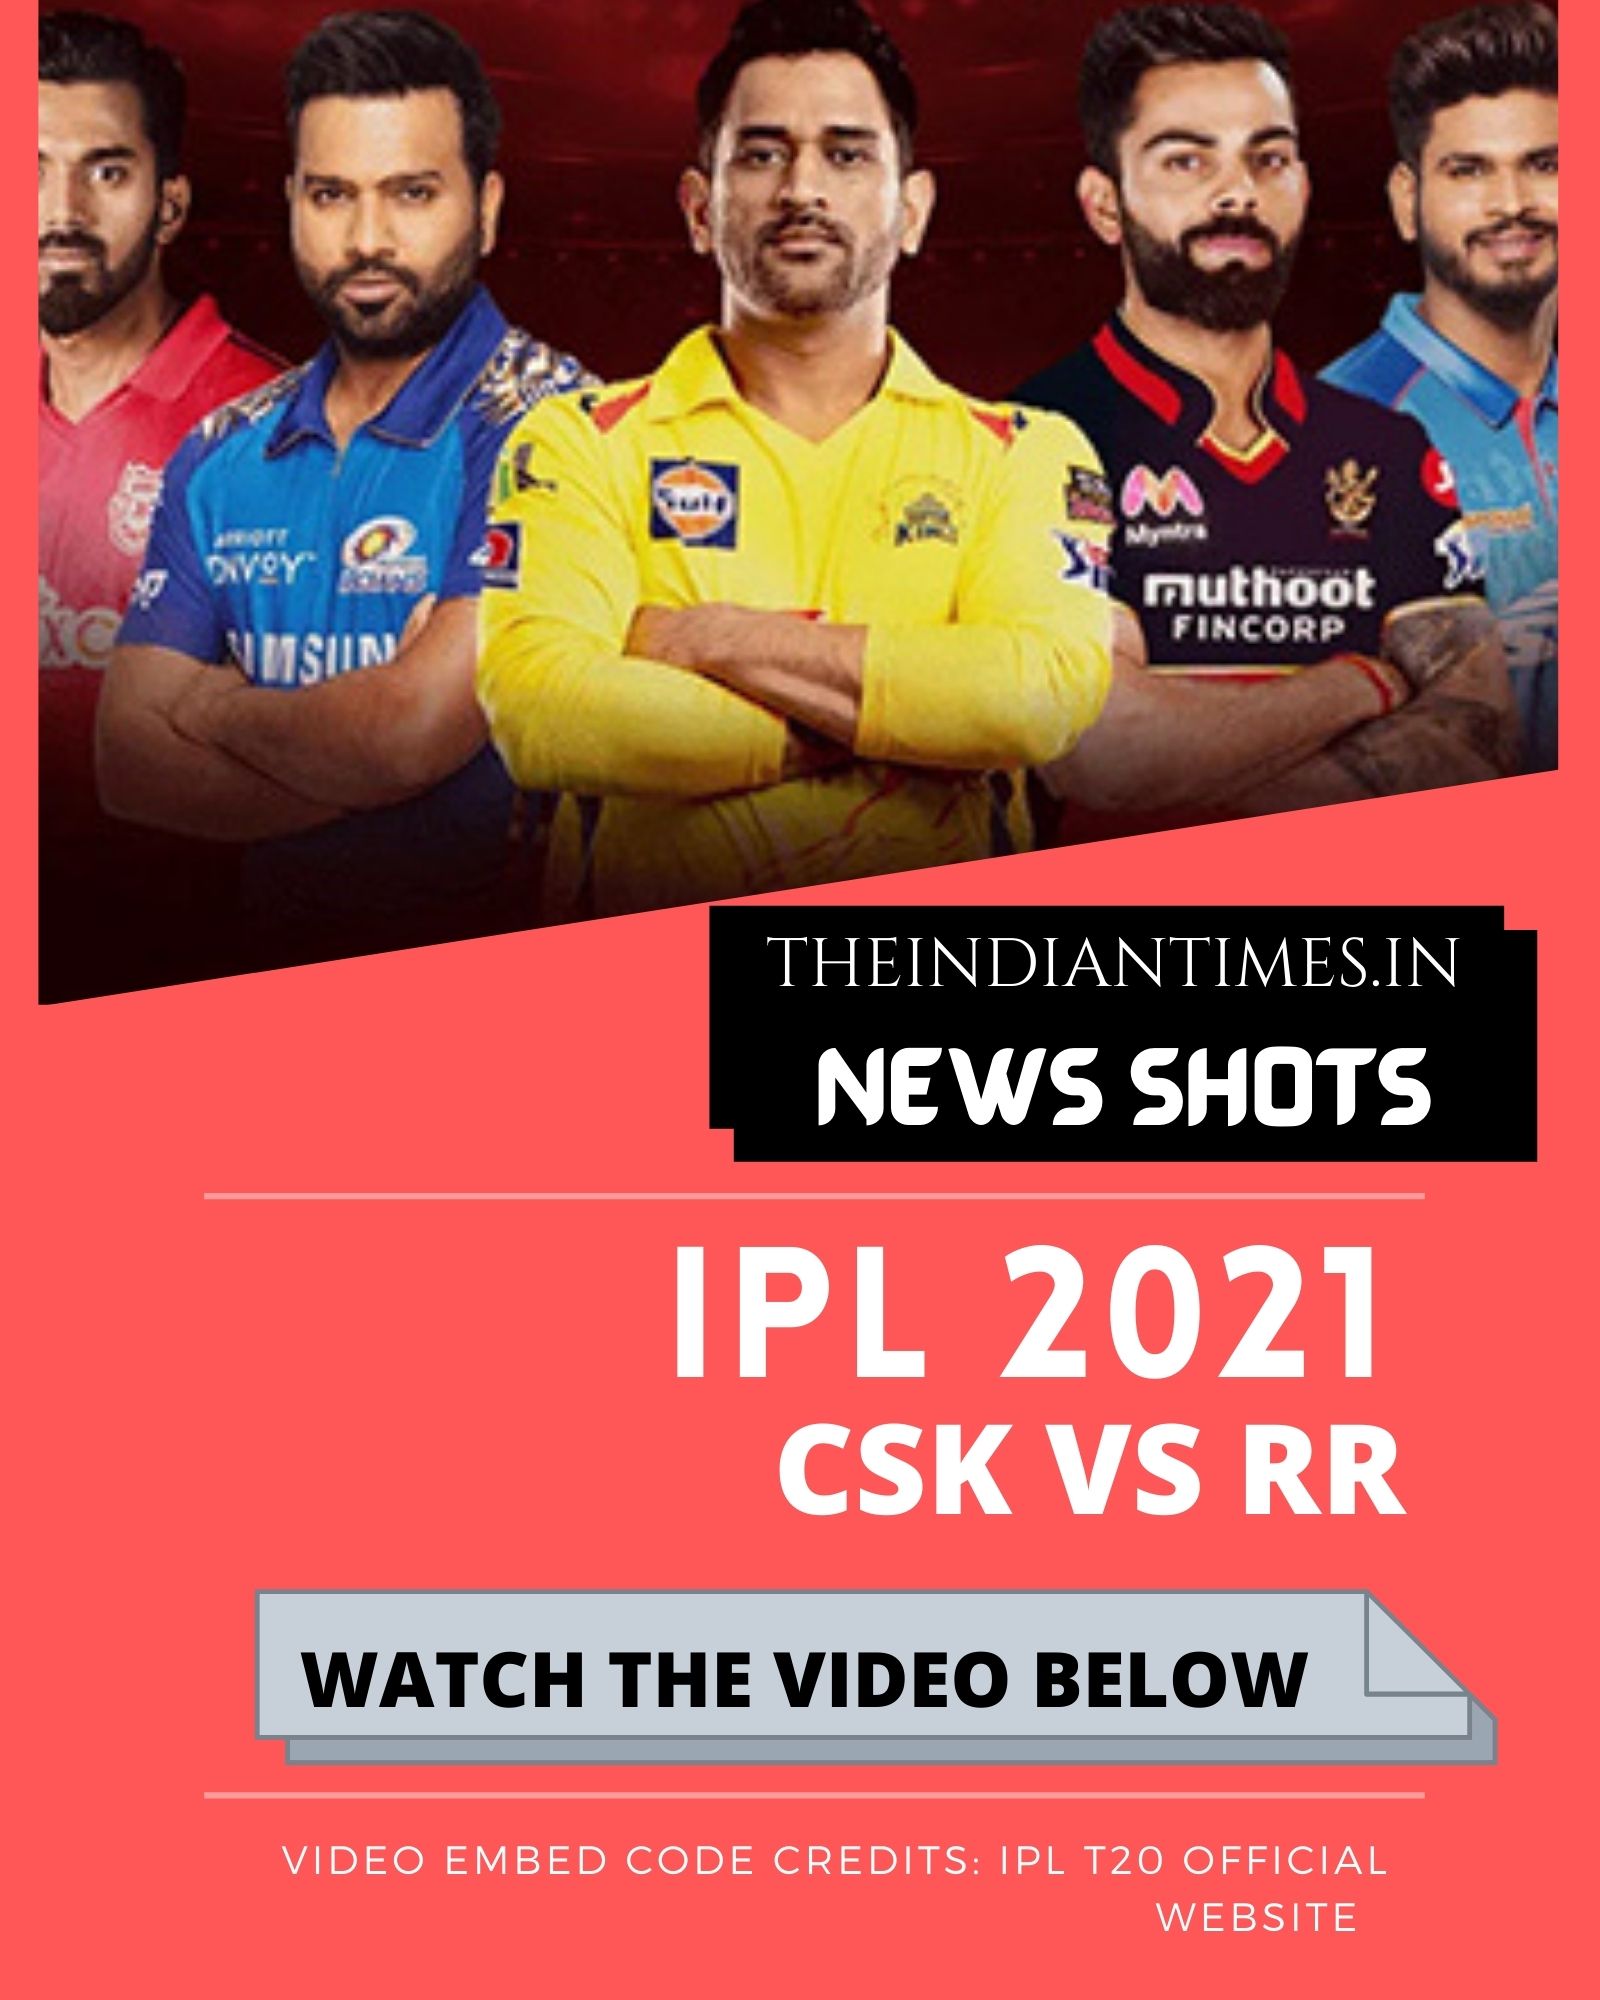 நான்கு கேட்ச்களை பிடித்து முடித்து கொண்டாடிய ஜடேஜா ! IPL 2021 CSK vs RR 1